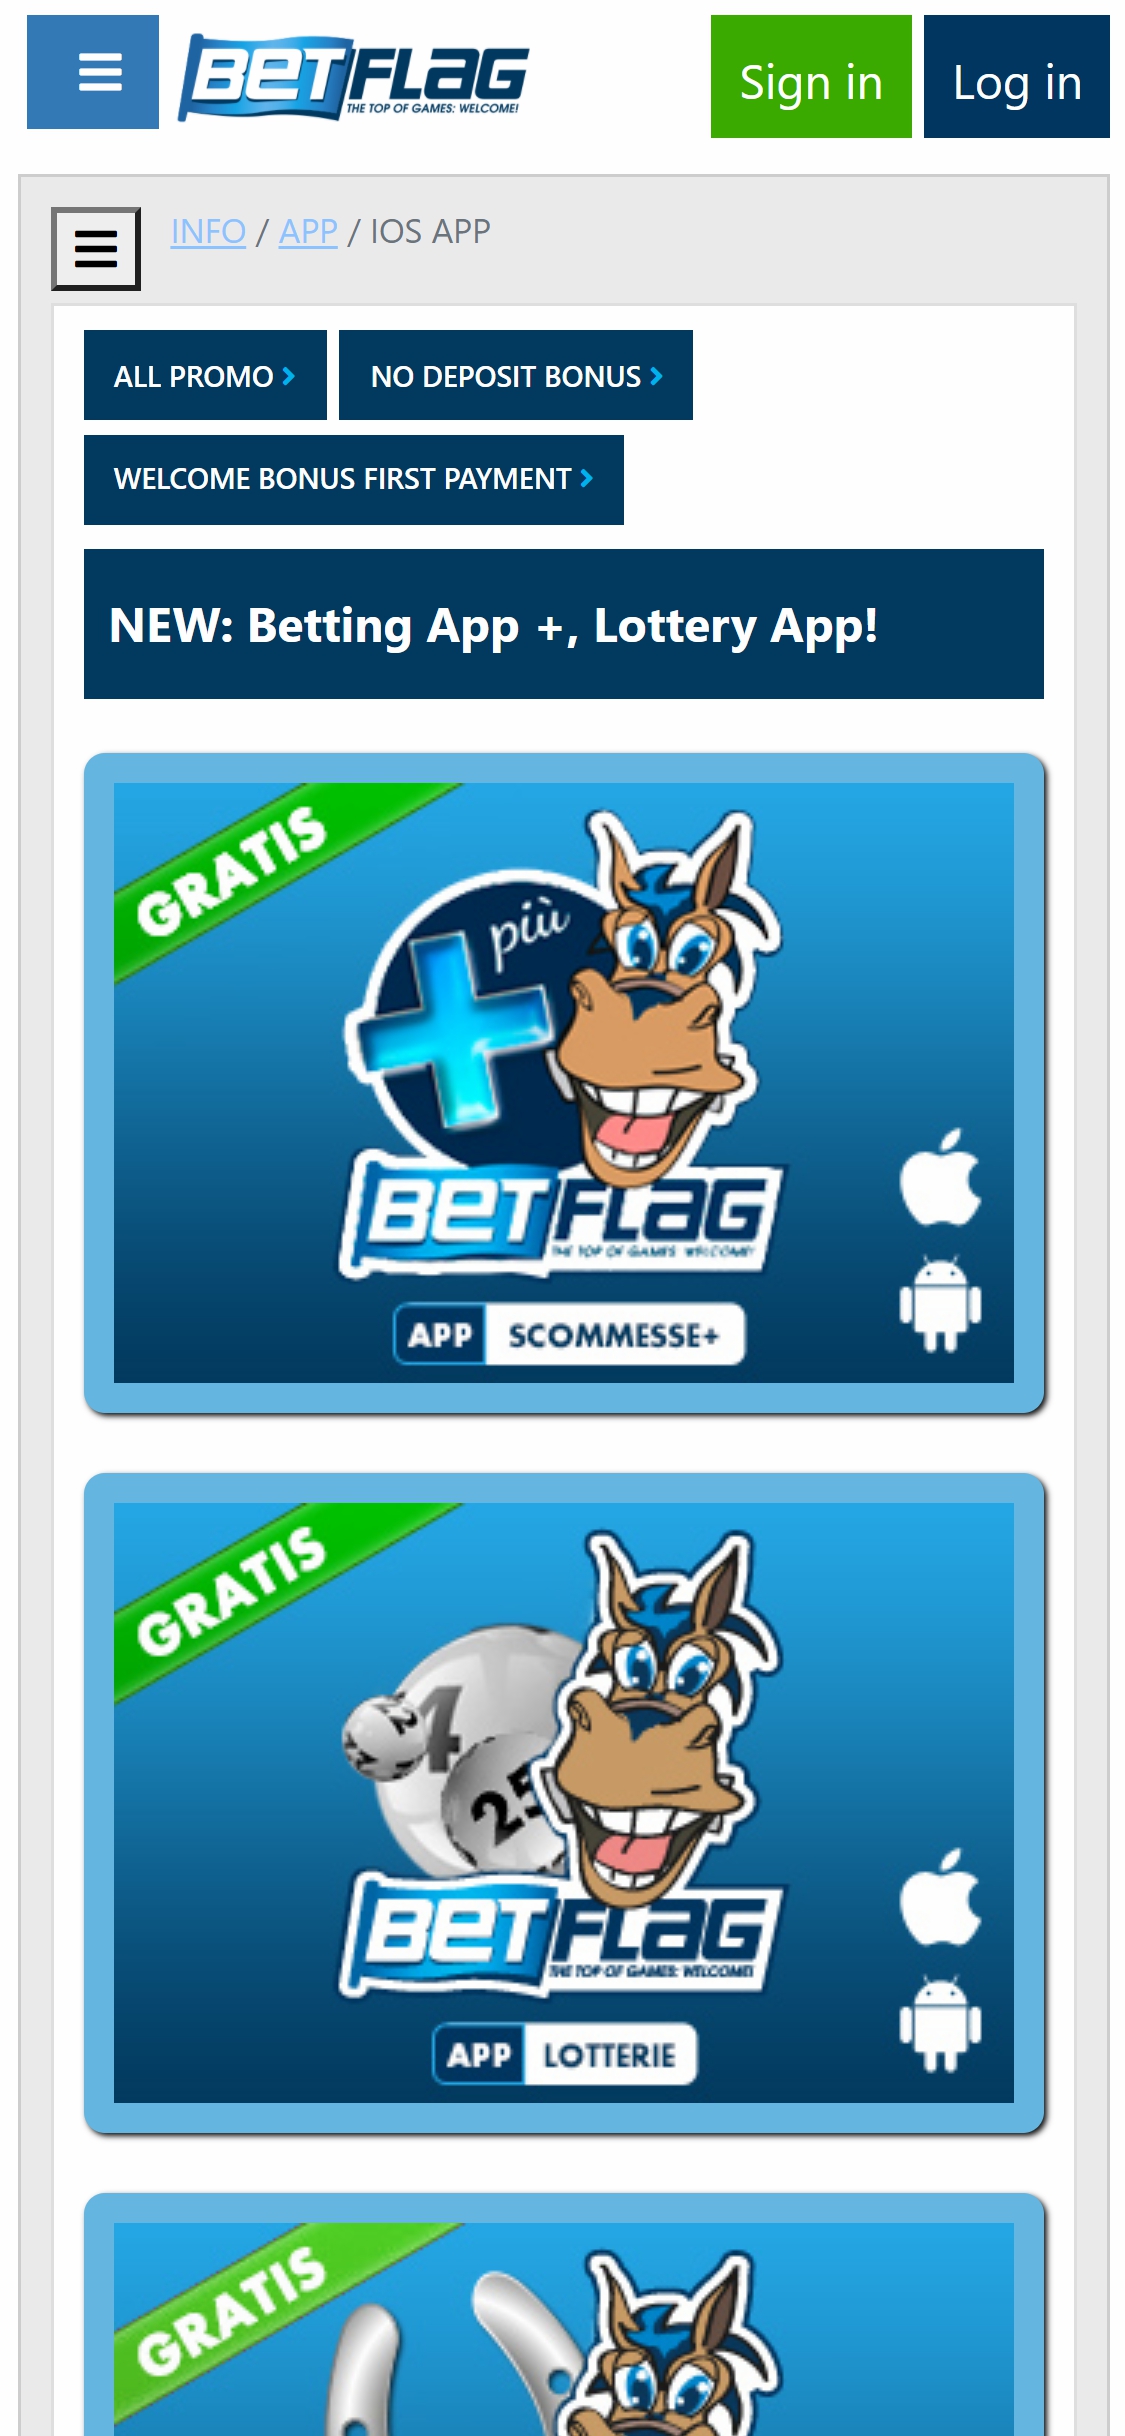 Betflag Casino Mobile App Review